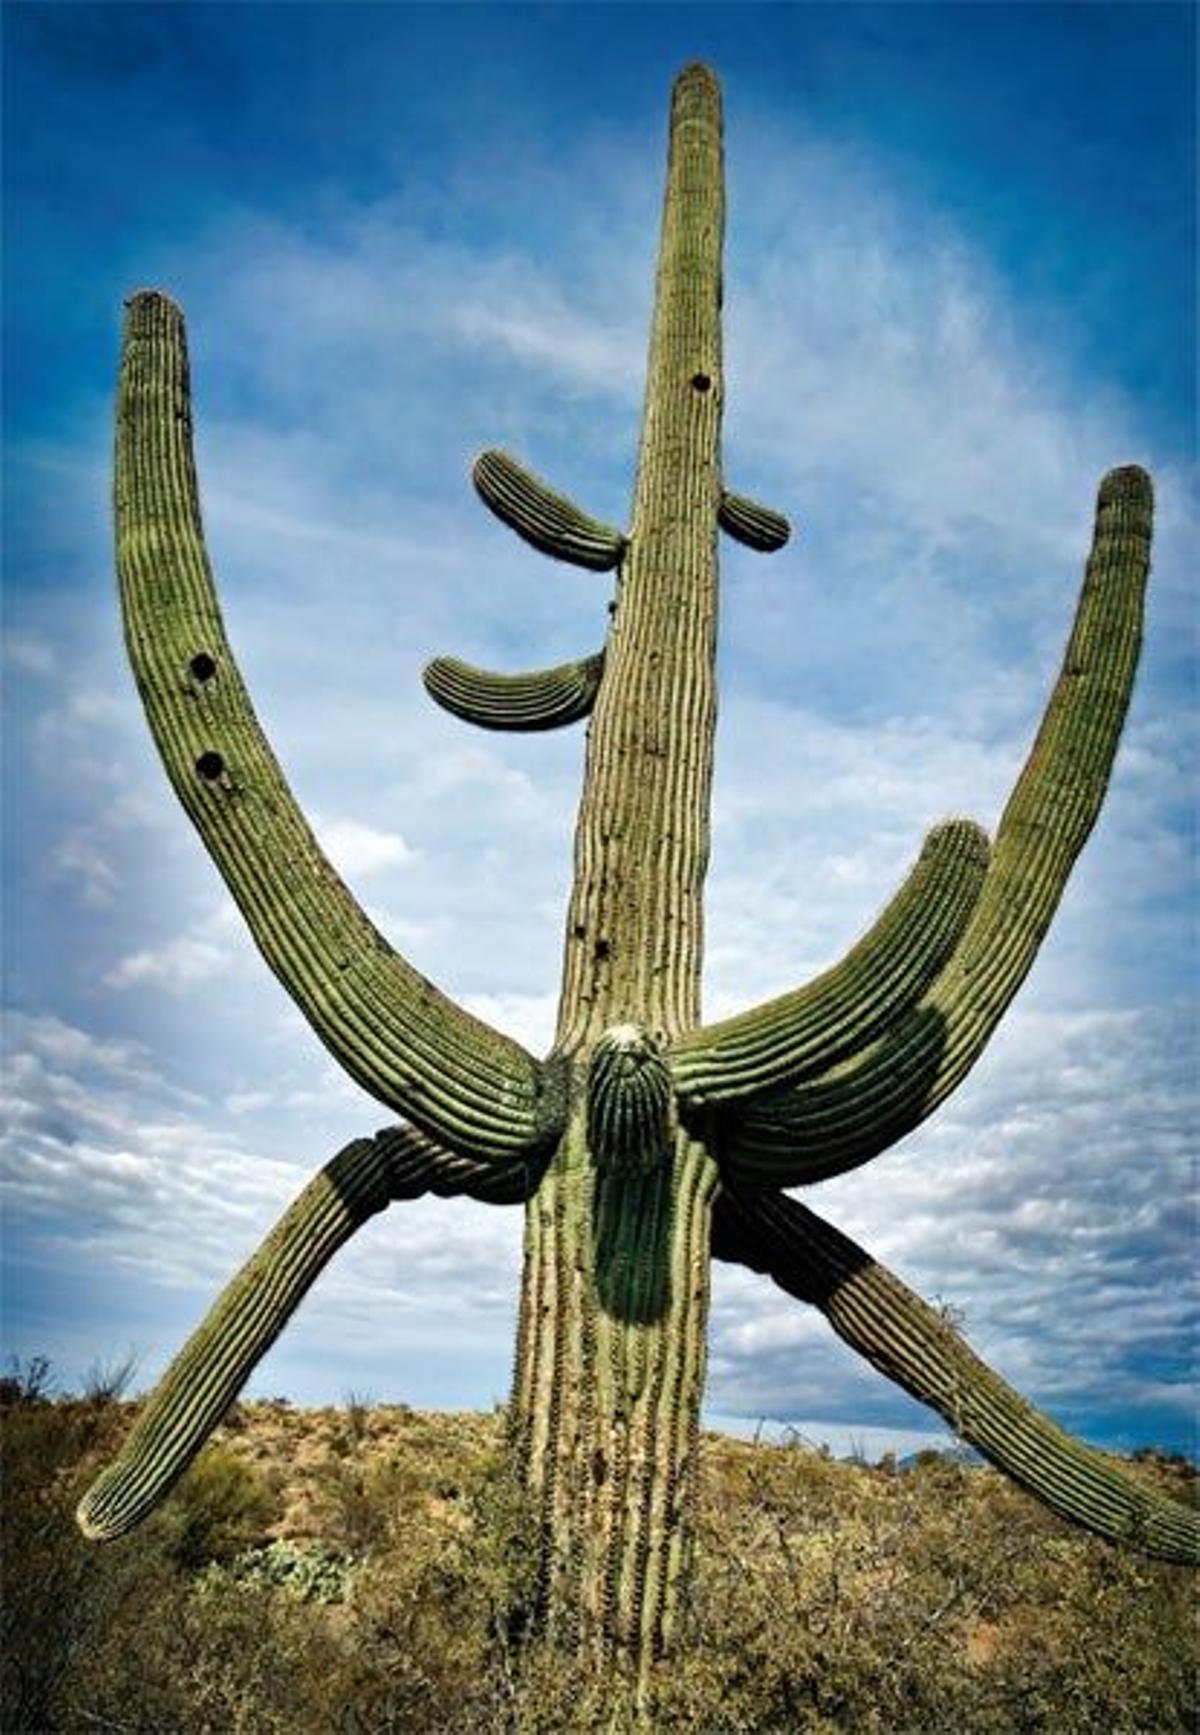 Saguaro, un cactus de crecimiento
lento que puede tener una antigüedad de 200
años y se ha convert